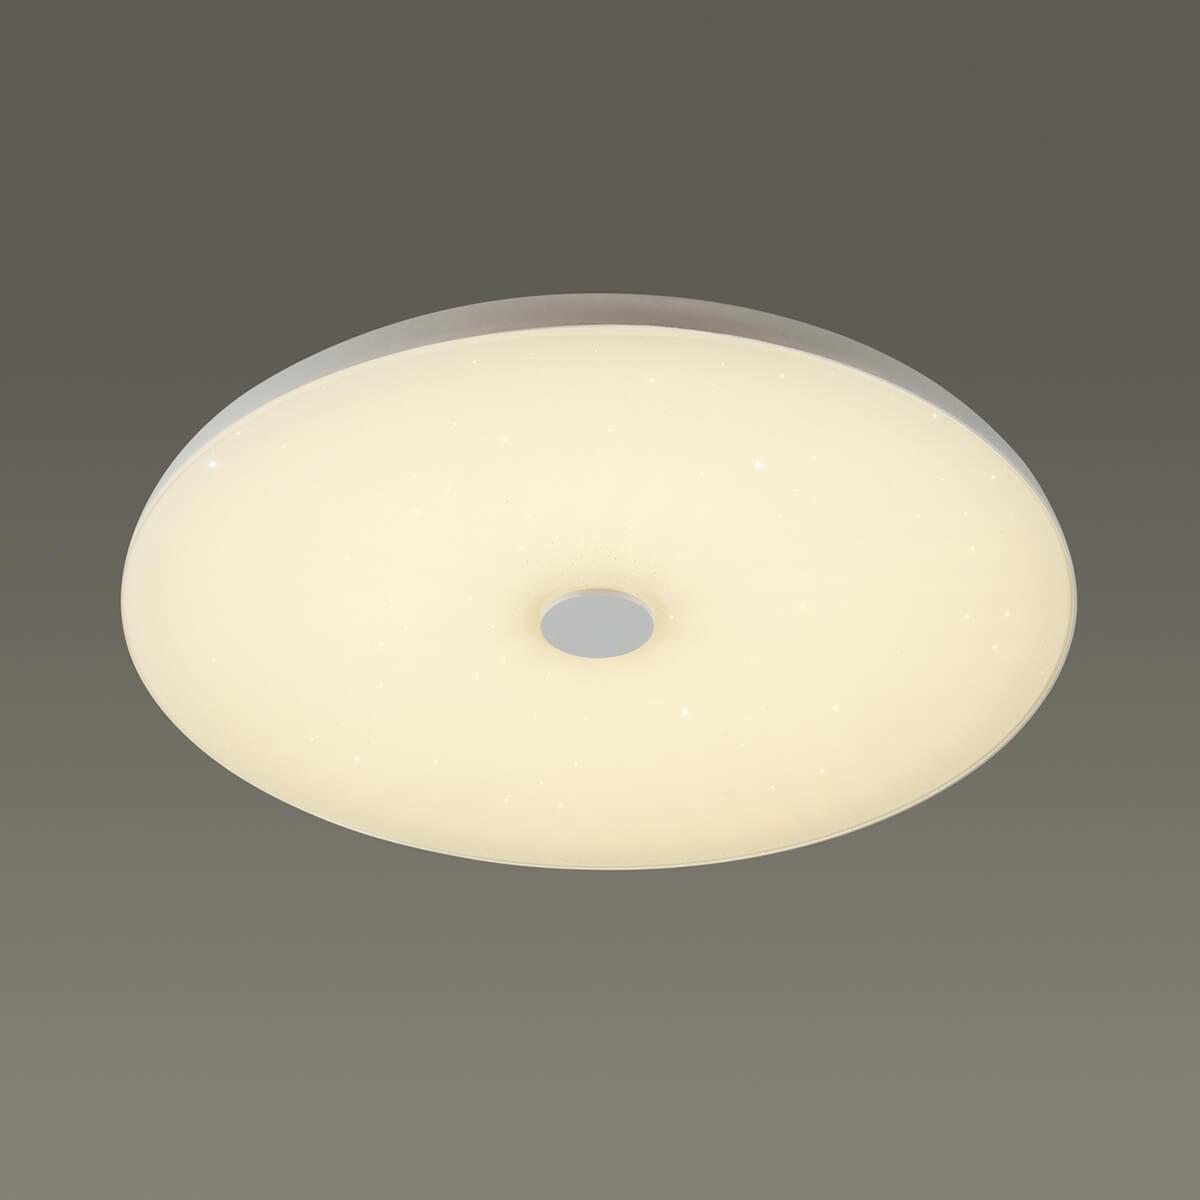 Потолочный светодиодный светильник Sonex Vasta led Roki muzcolor 4629/EL